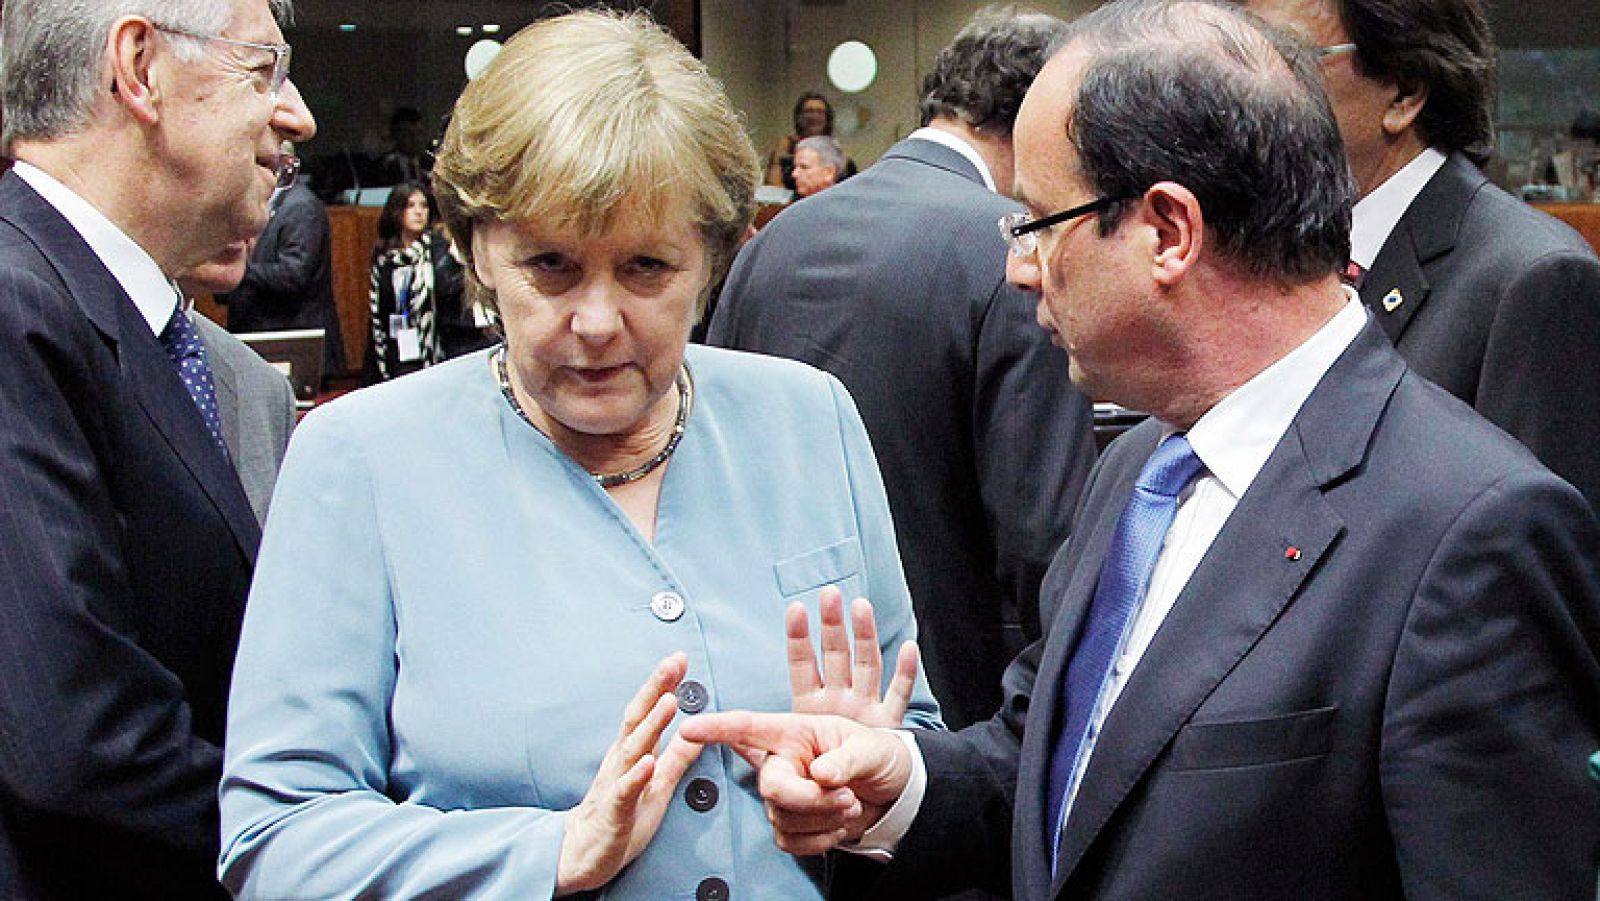 Los eurobonos se interponen entre Merkel y Hollande